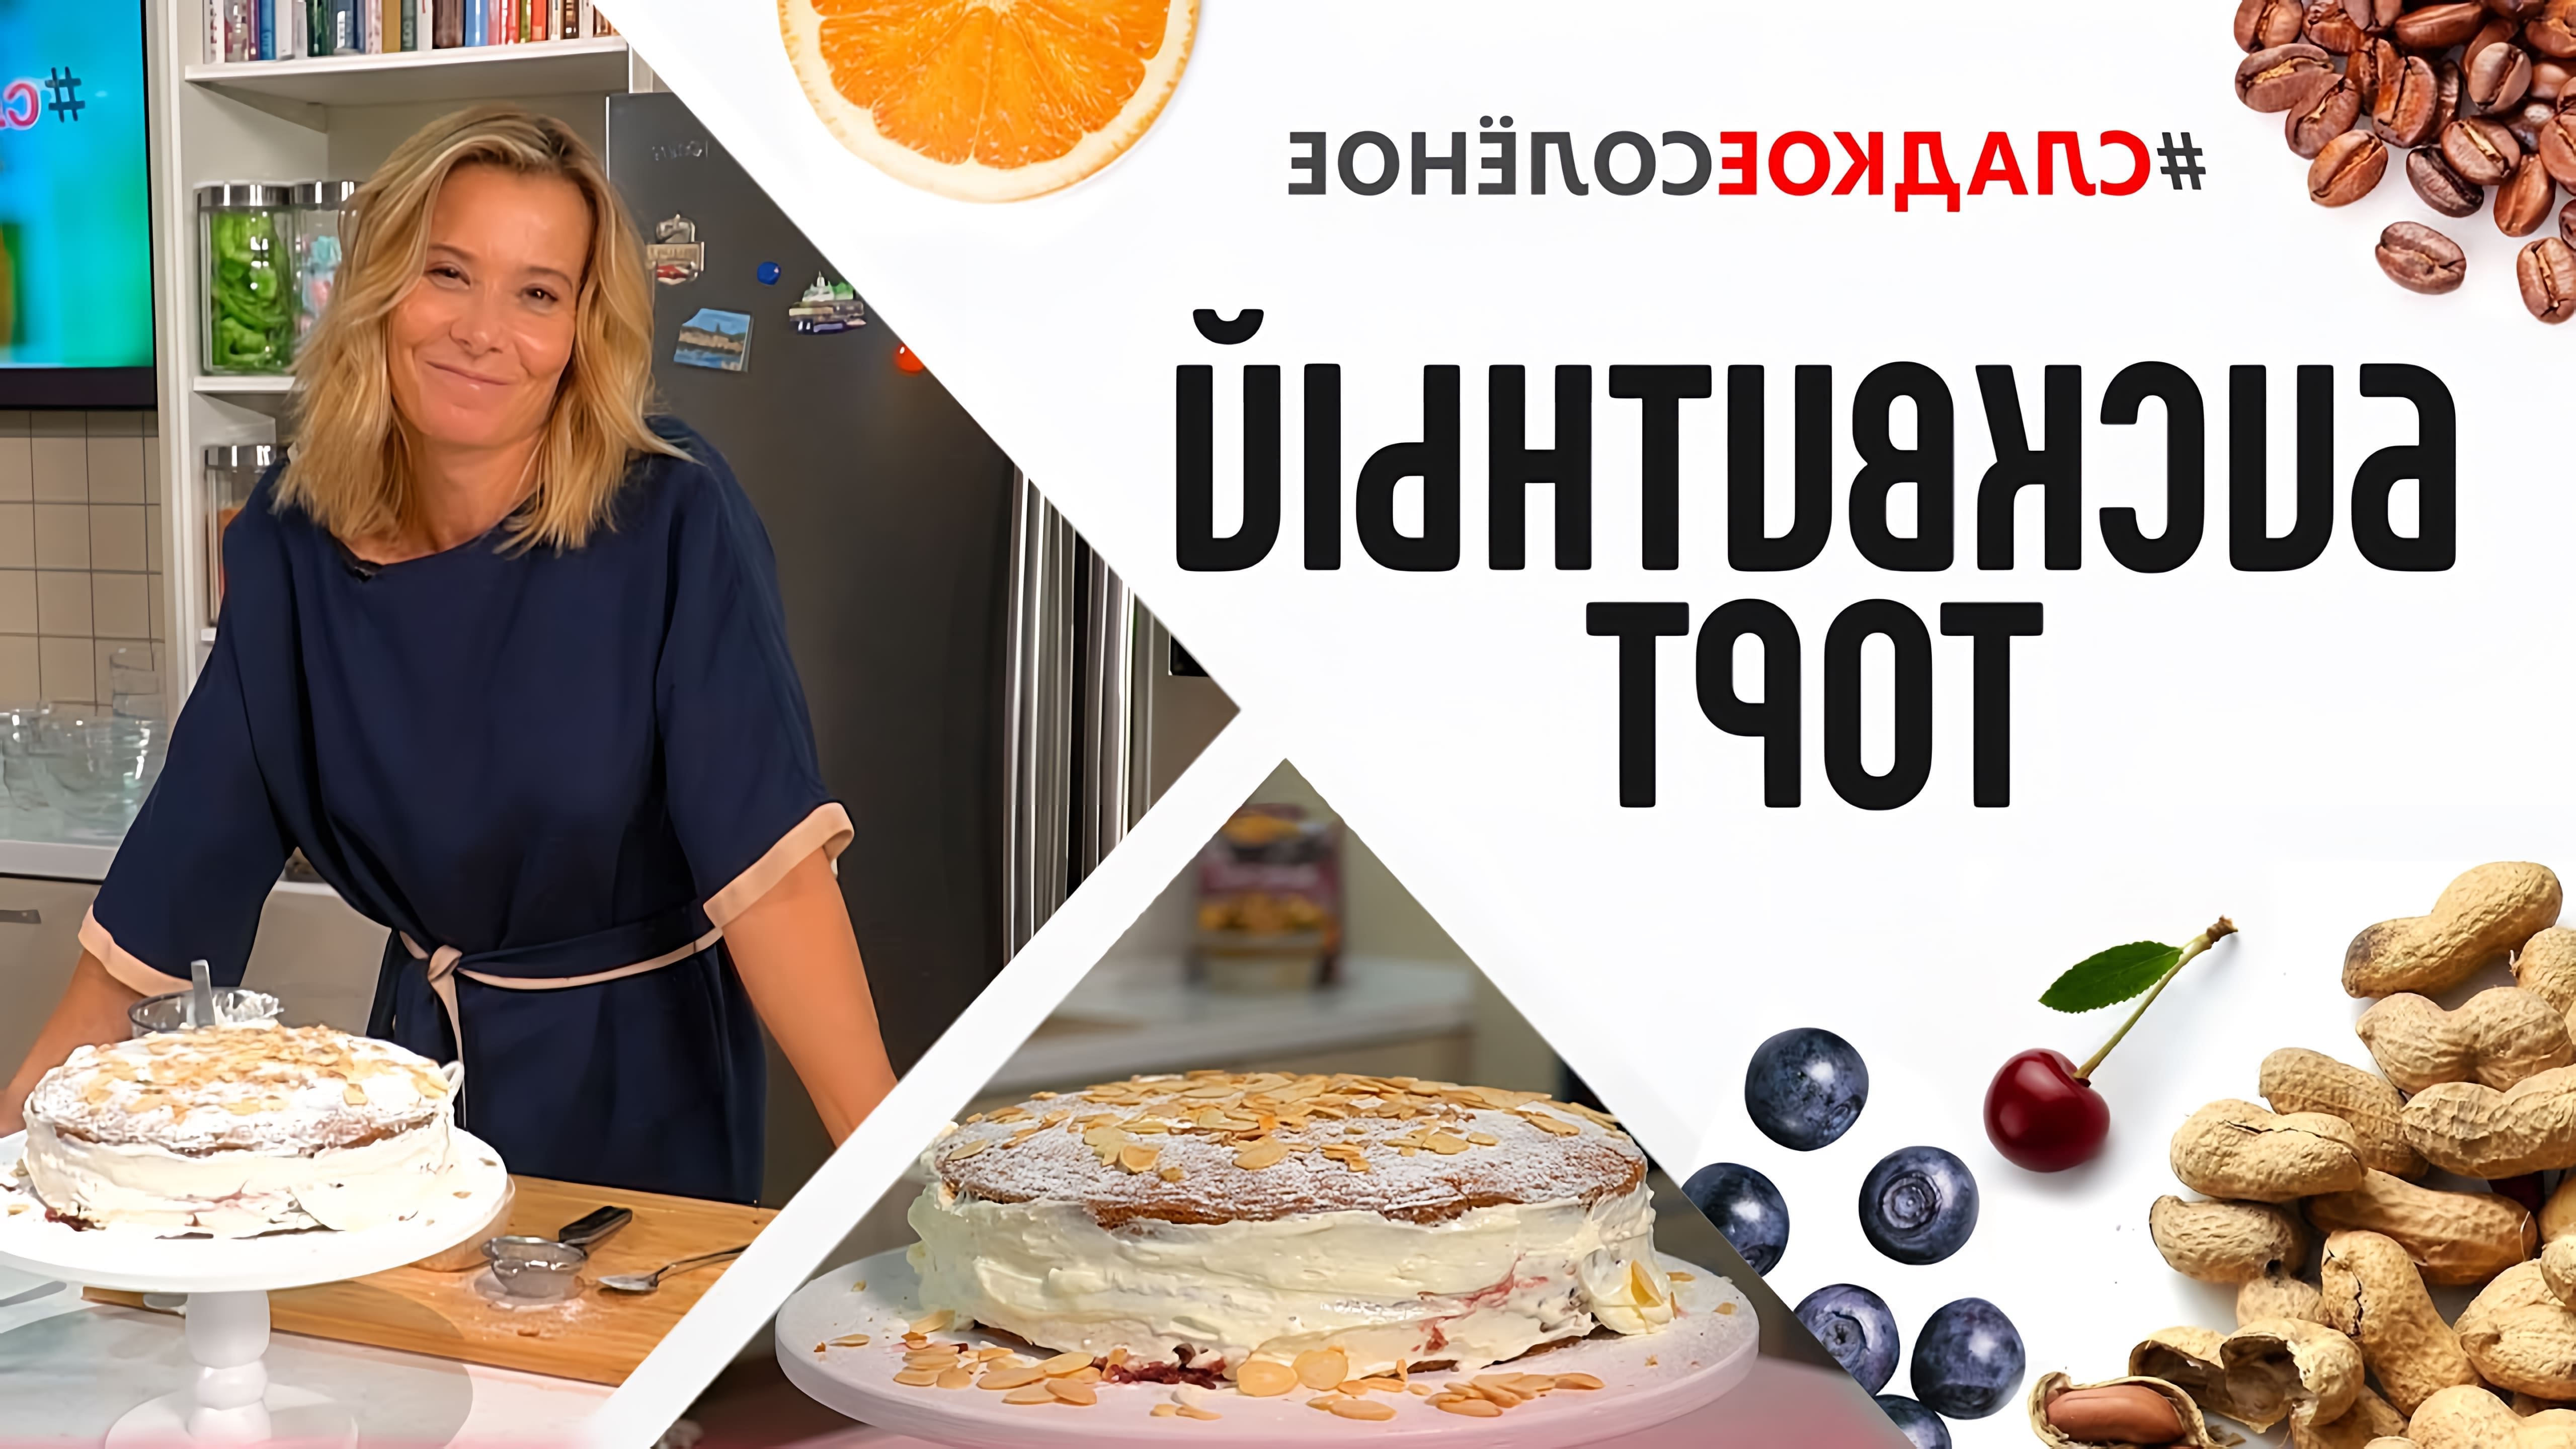 В этом видео Юлия Высоцкая показывает, как приготовить бисквитный торт с вареньем